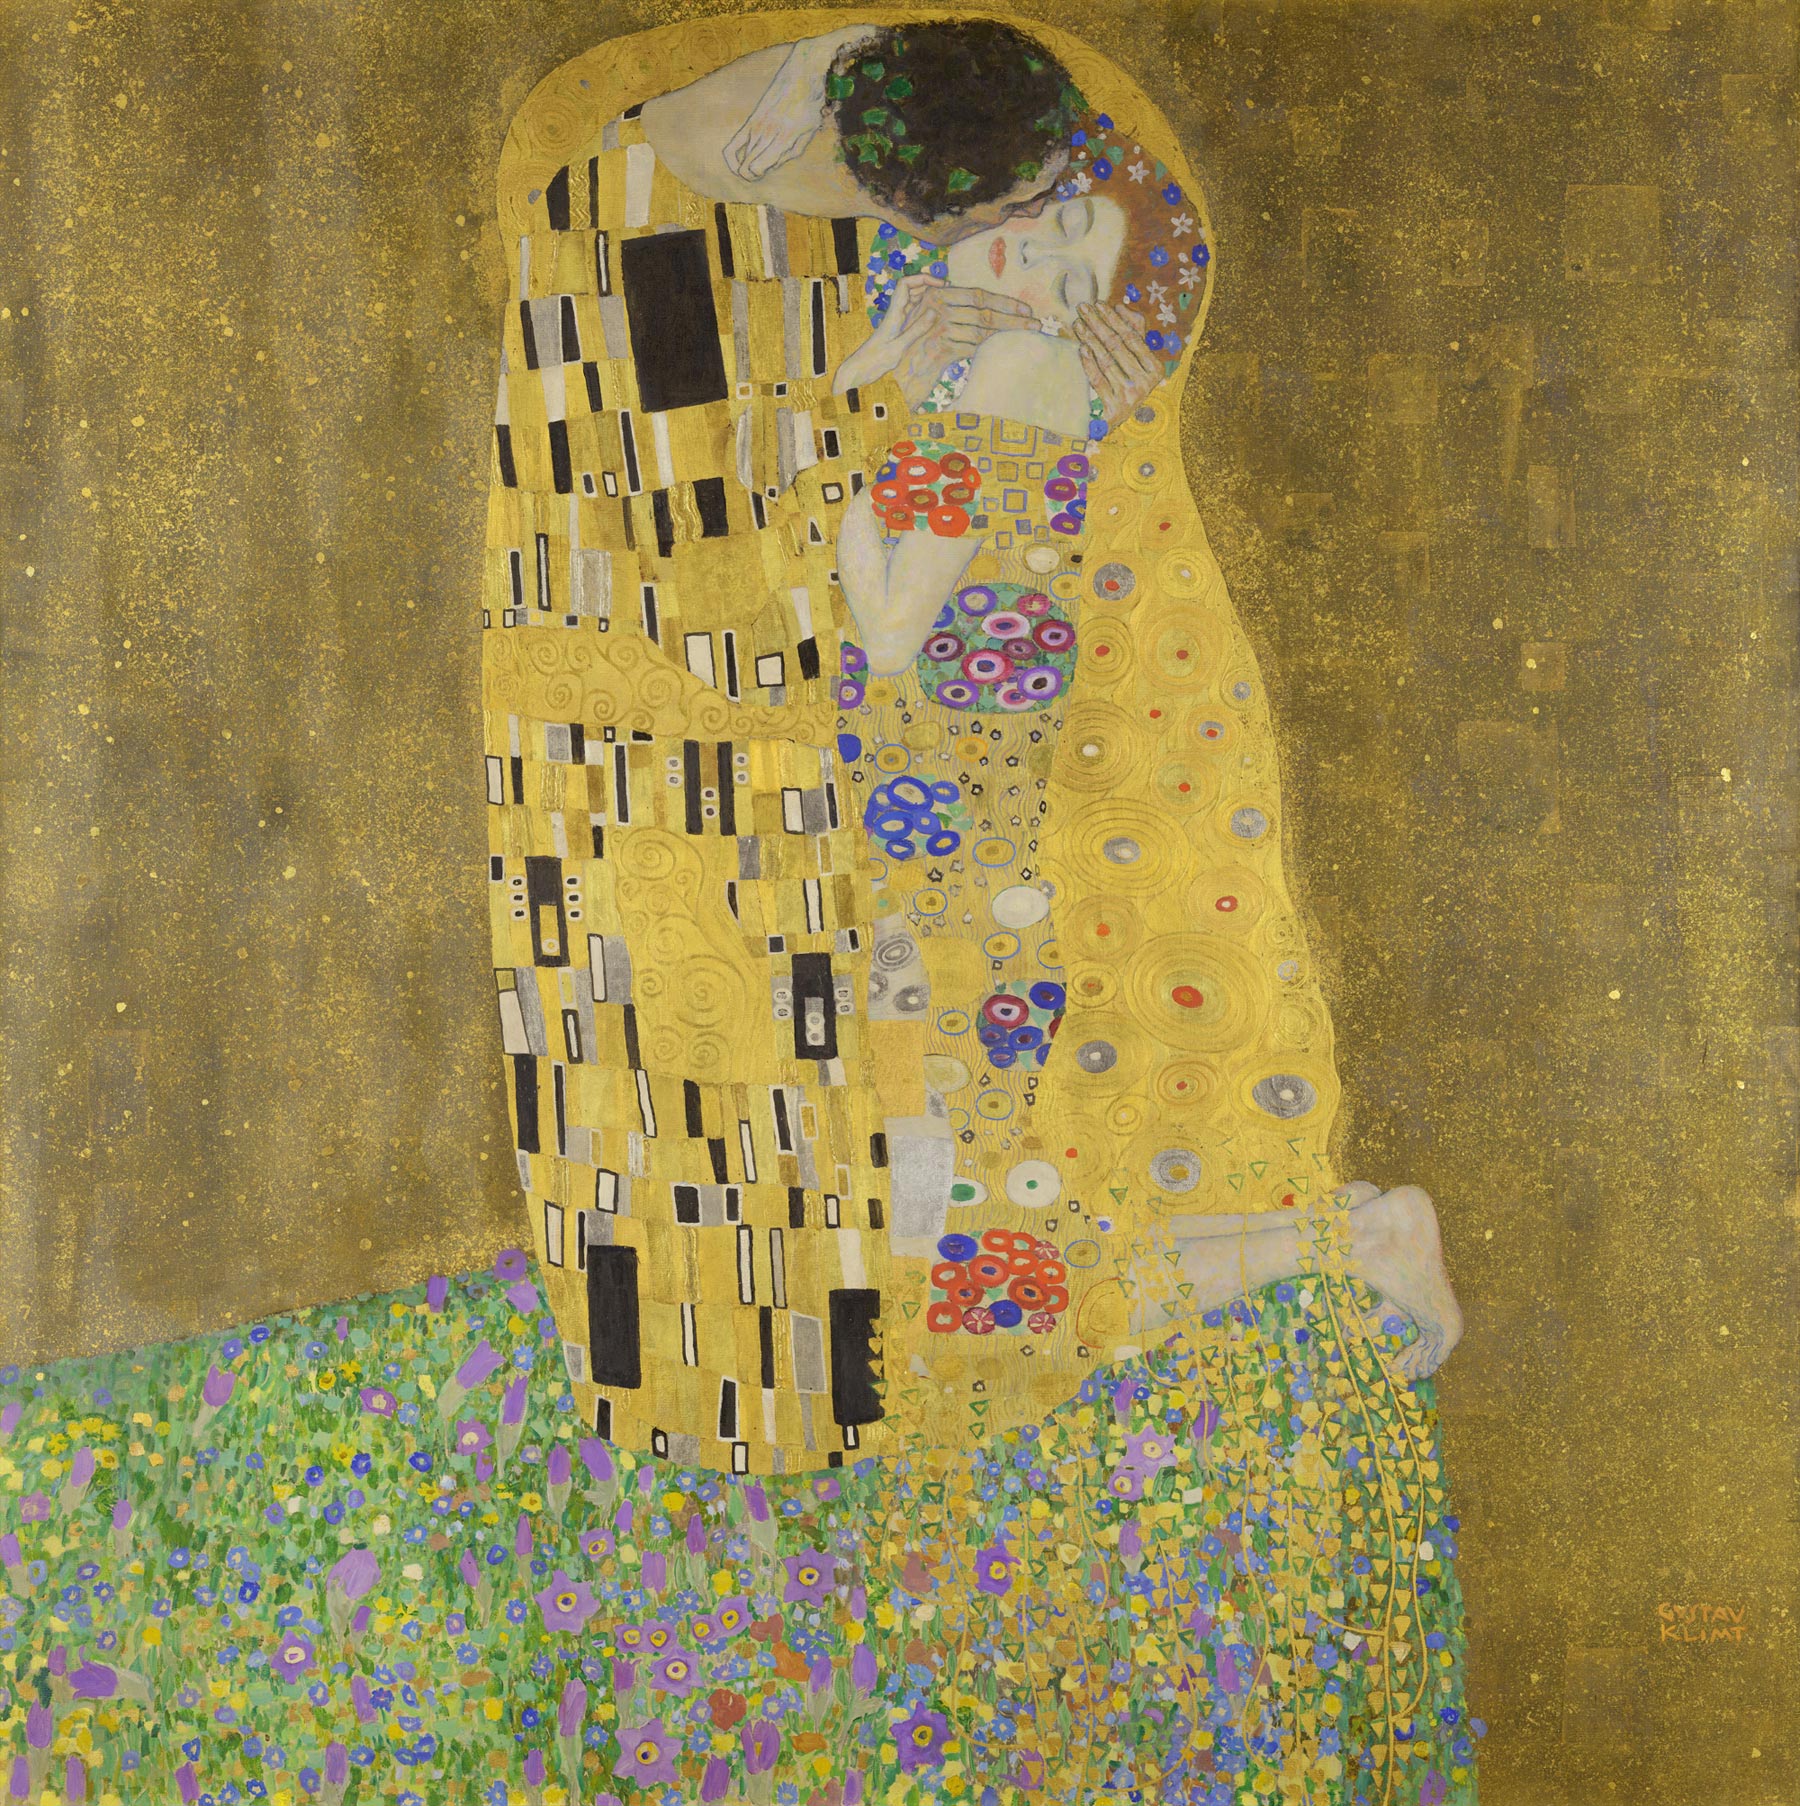 Gustav Klimt, The Kiss (1908; oil on canvas, 180 x 180 cm; Vienna, Österreichische Galerie Belvedere)